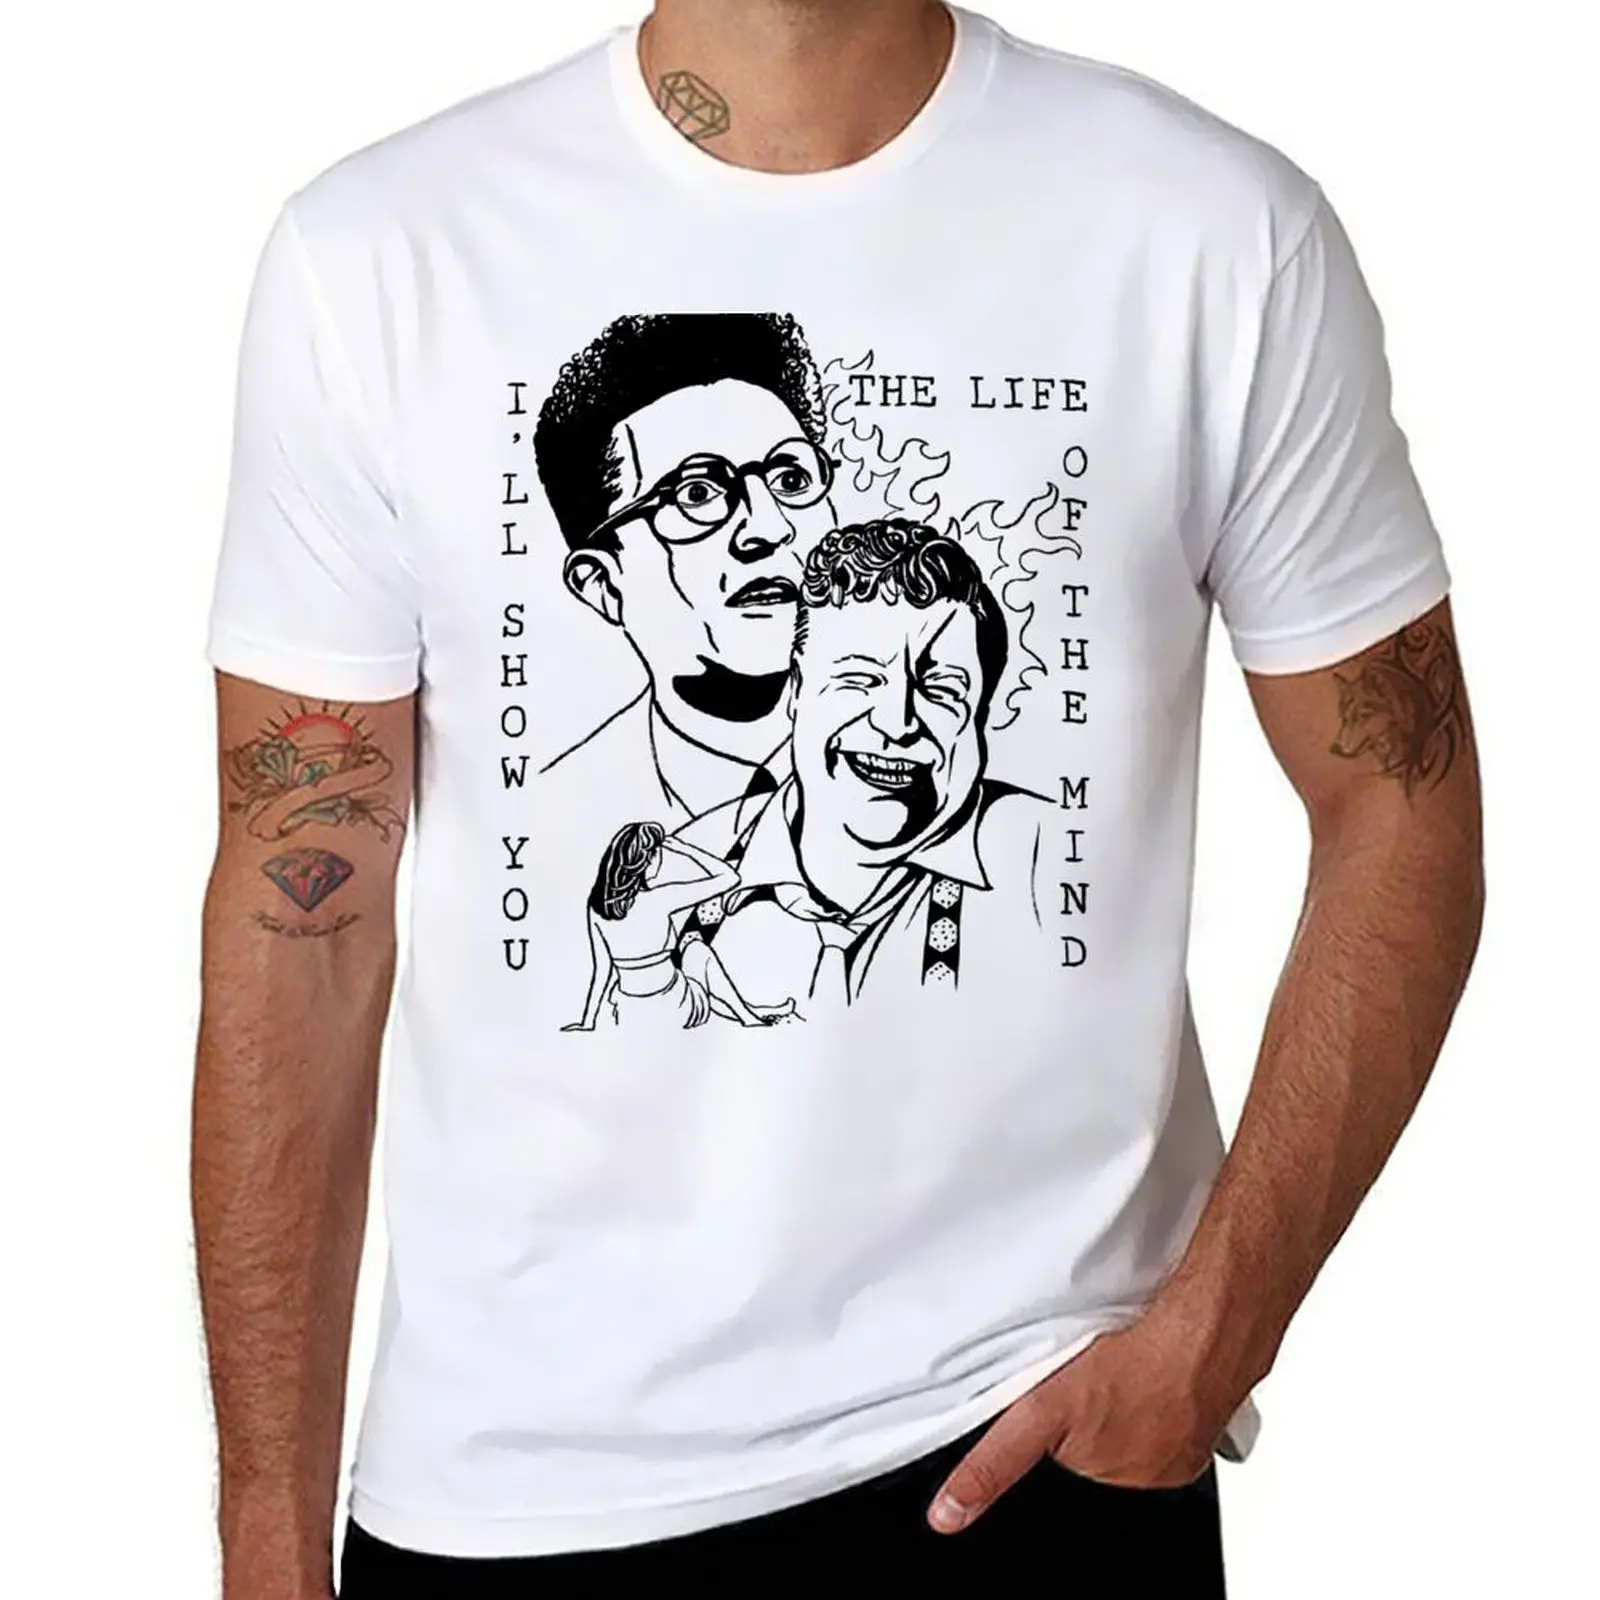 

Новая футболка Barton Fink Fan с художественным принтом, футболки, мужские тяжелые футболки, черные футболки, эстетическая одежда, футболки для мужчин